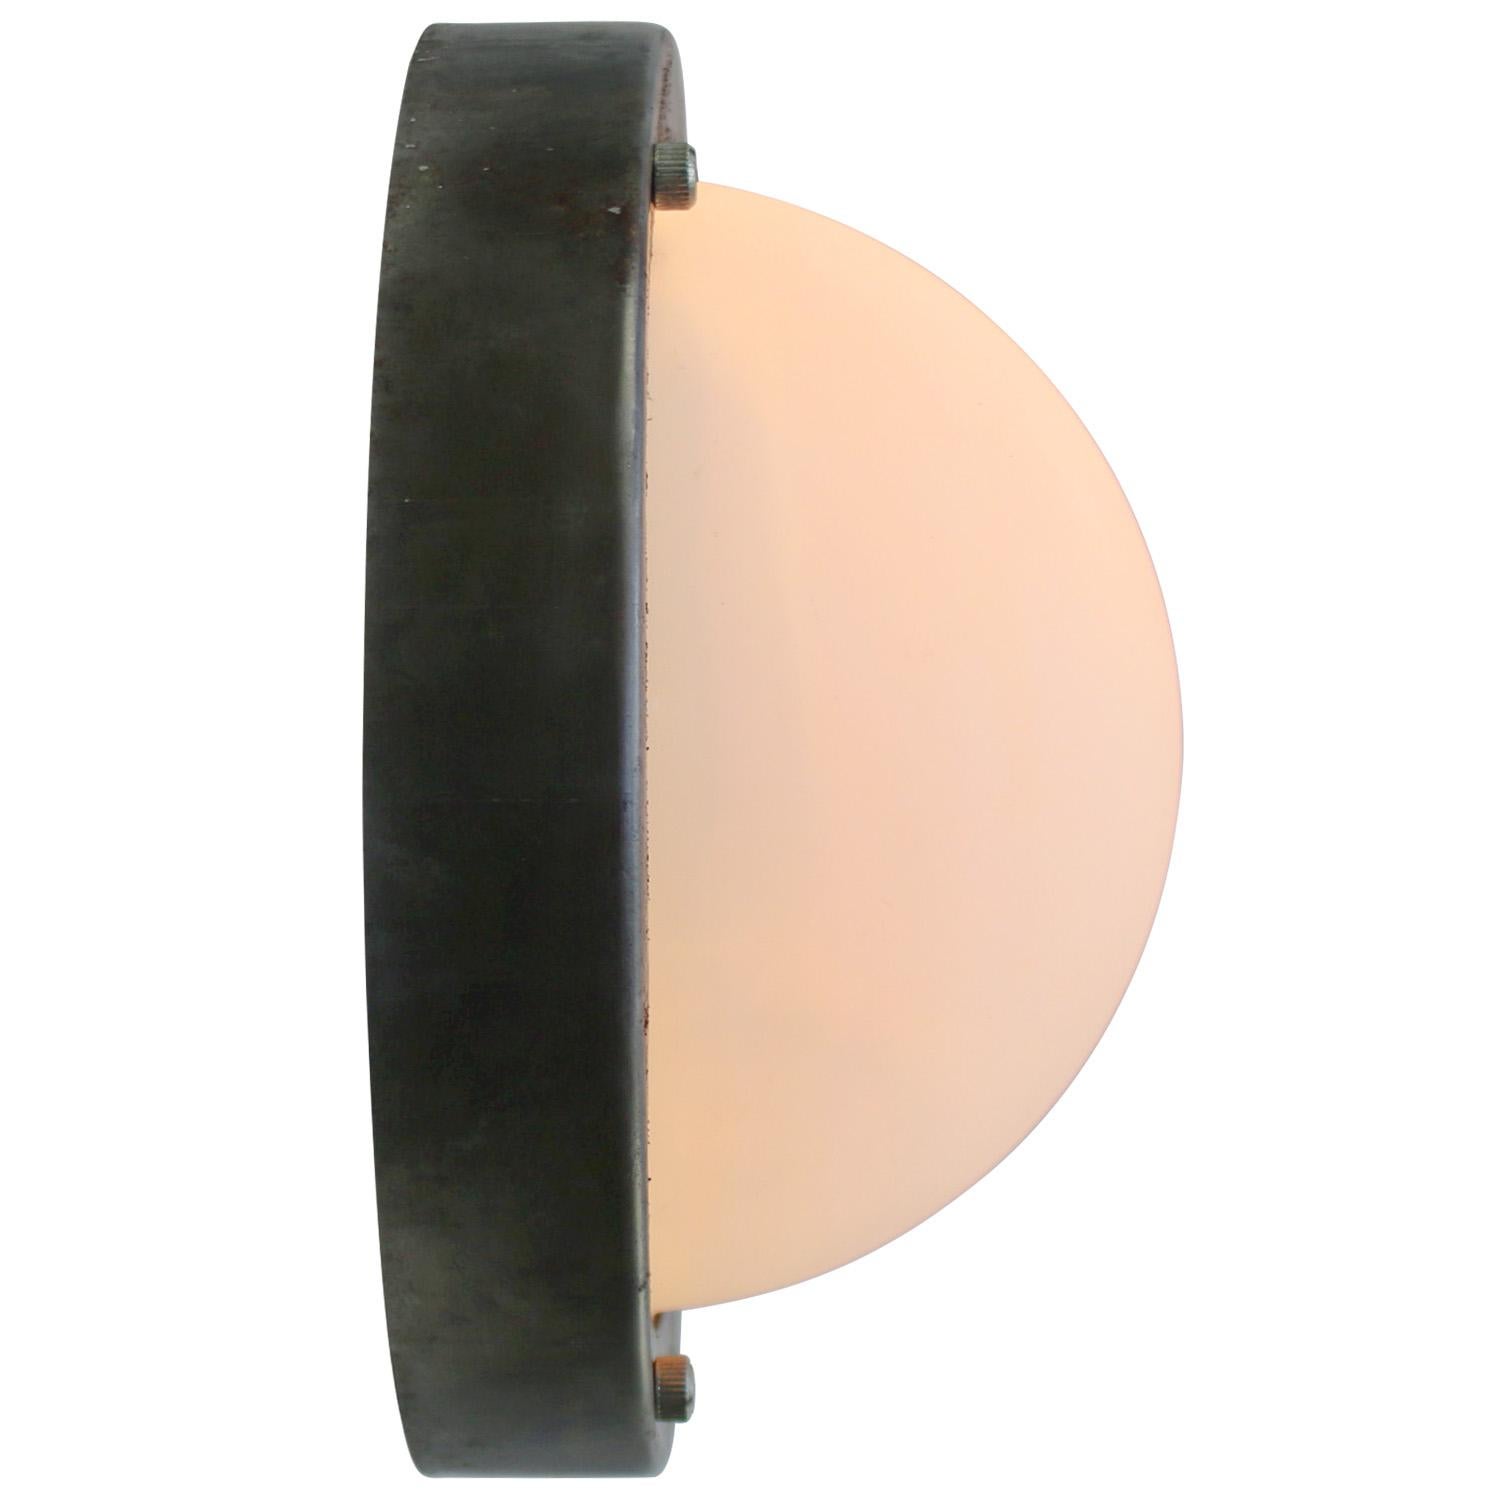 Industrielle Wand-/Deckenleuchte
Metallrücken mit mattiertem Glas.

2x E26 / E27

Gewicht 1,70 kg / 3,7 lb

Der Preis gilt für jeden einzelnen Artikel. Alle Lampen sind nach internationalen Normen für Glühbirnen, energieeffiziente und LED-Lampen